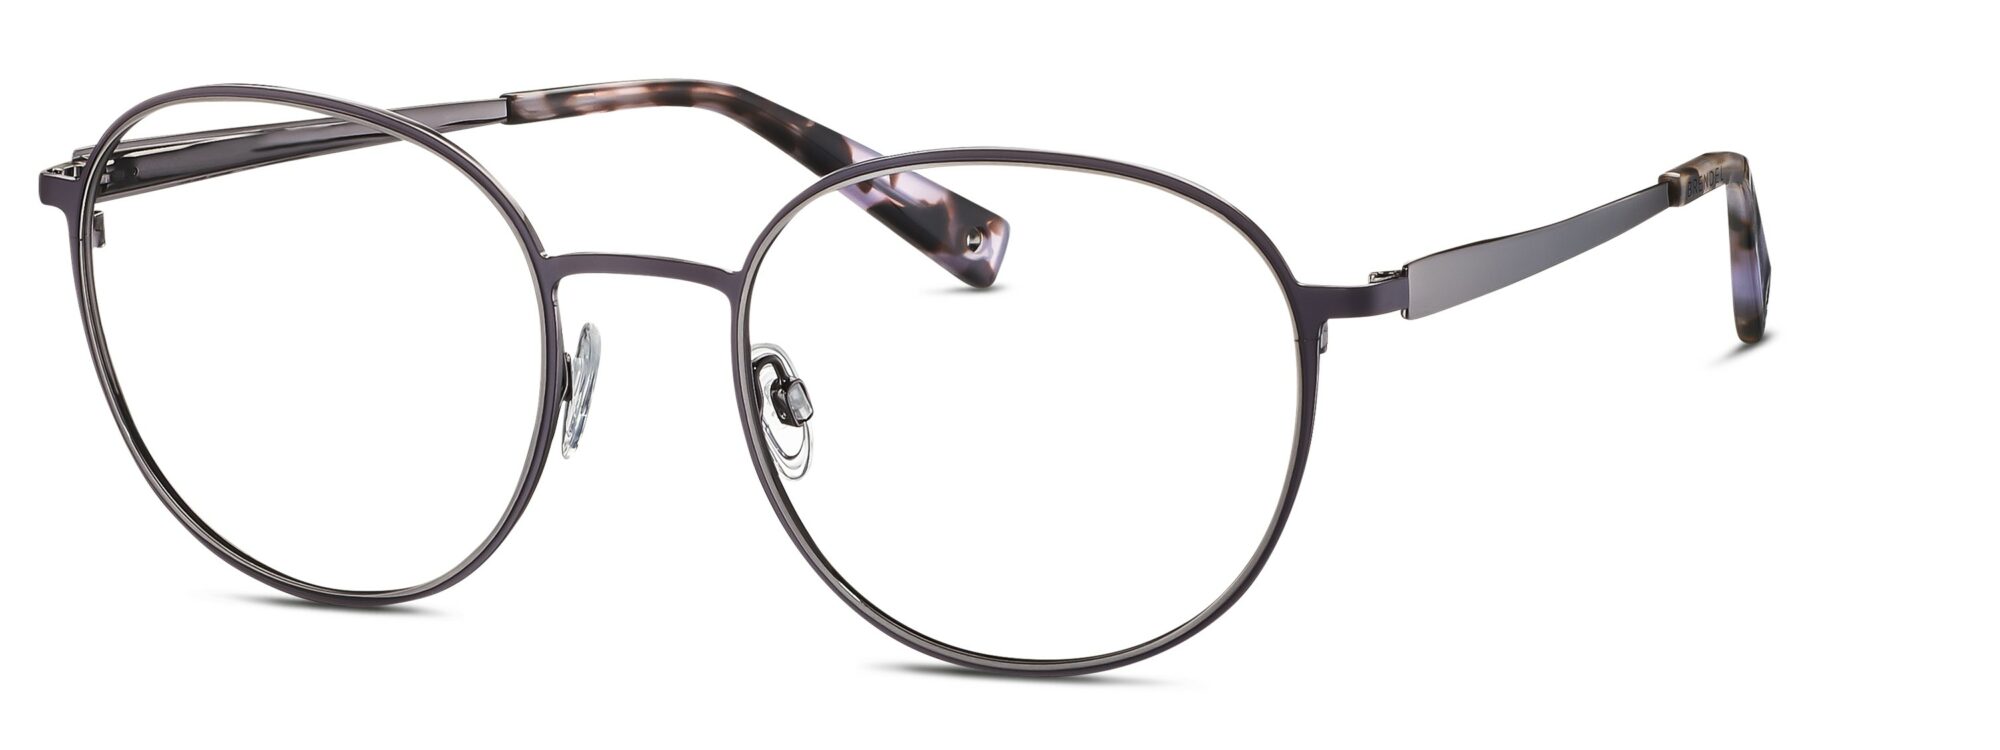 BRENDEL eyewear - 902364-35